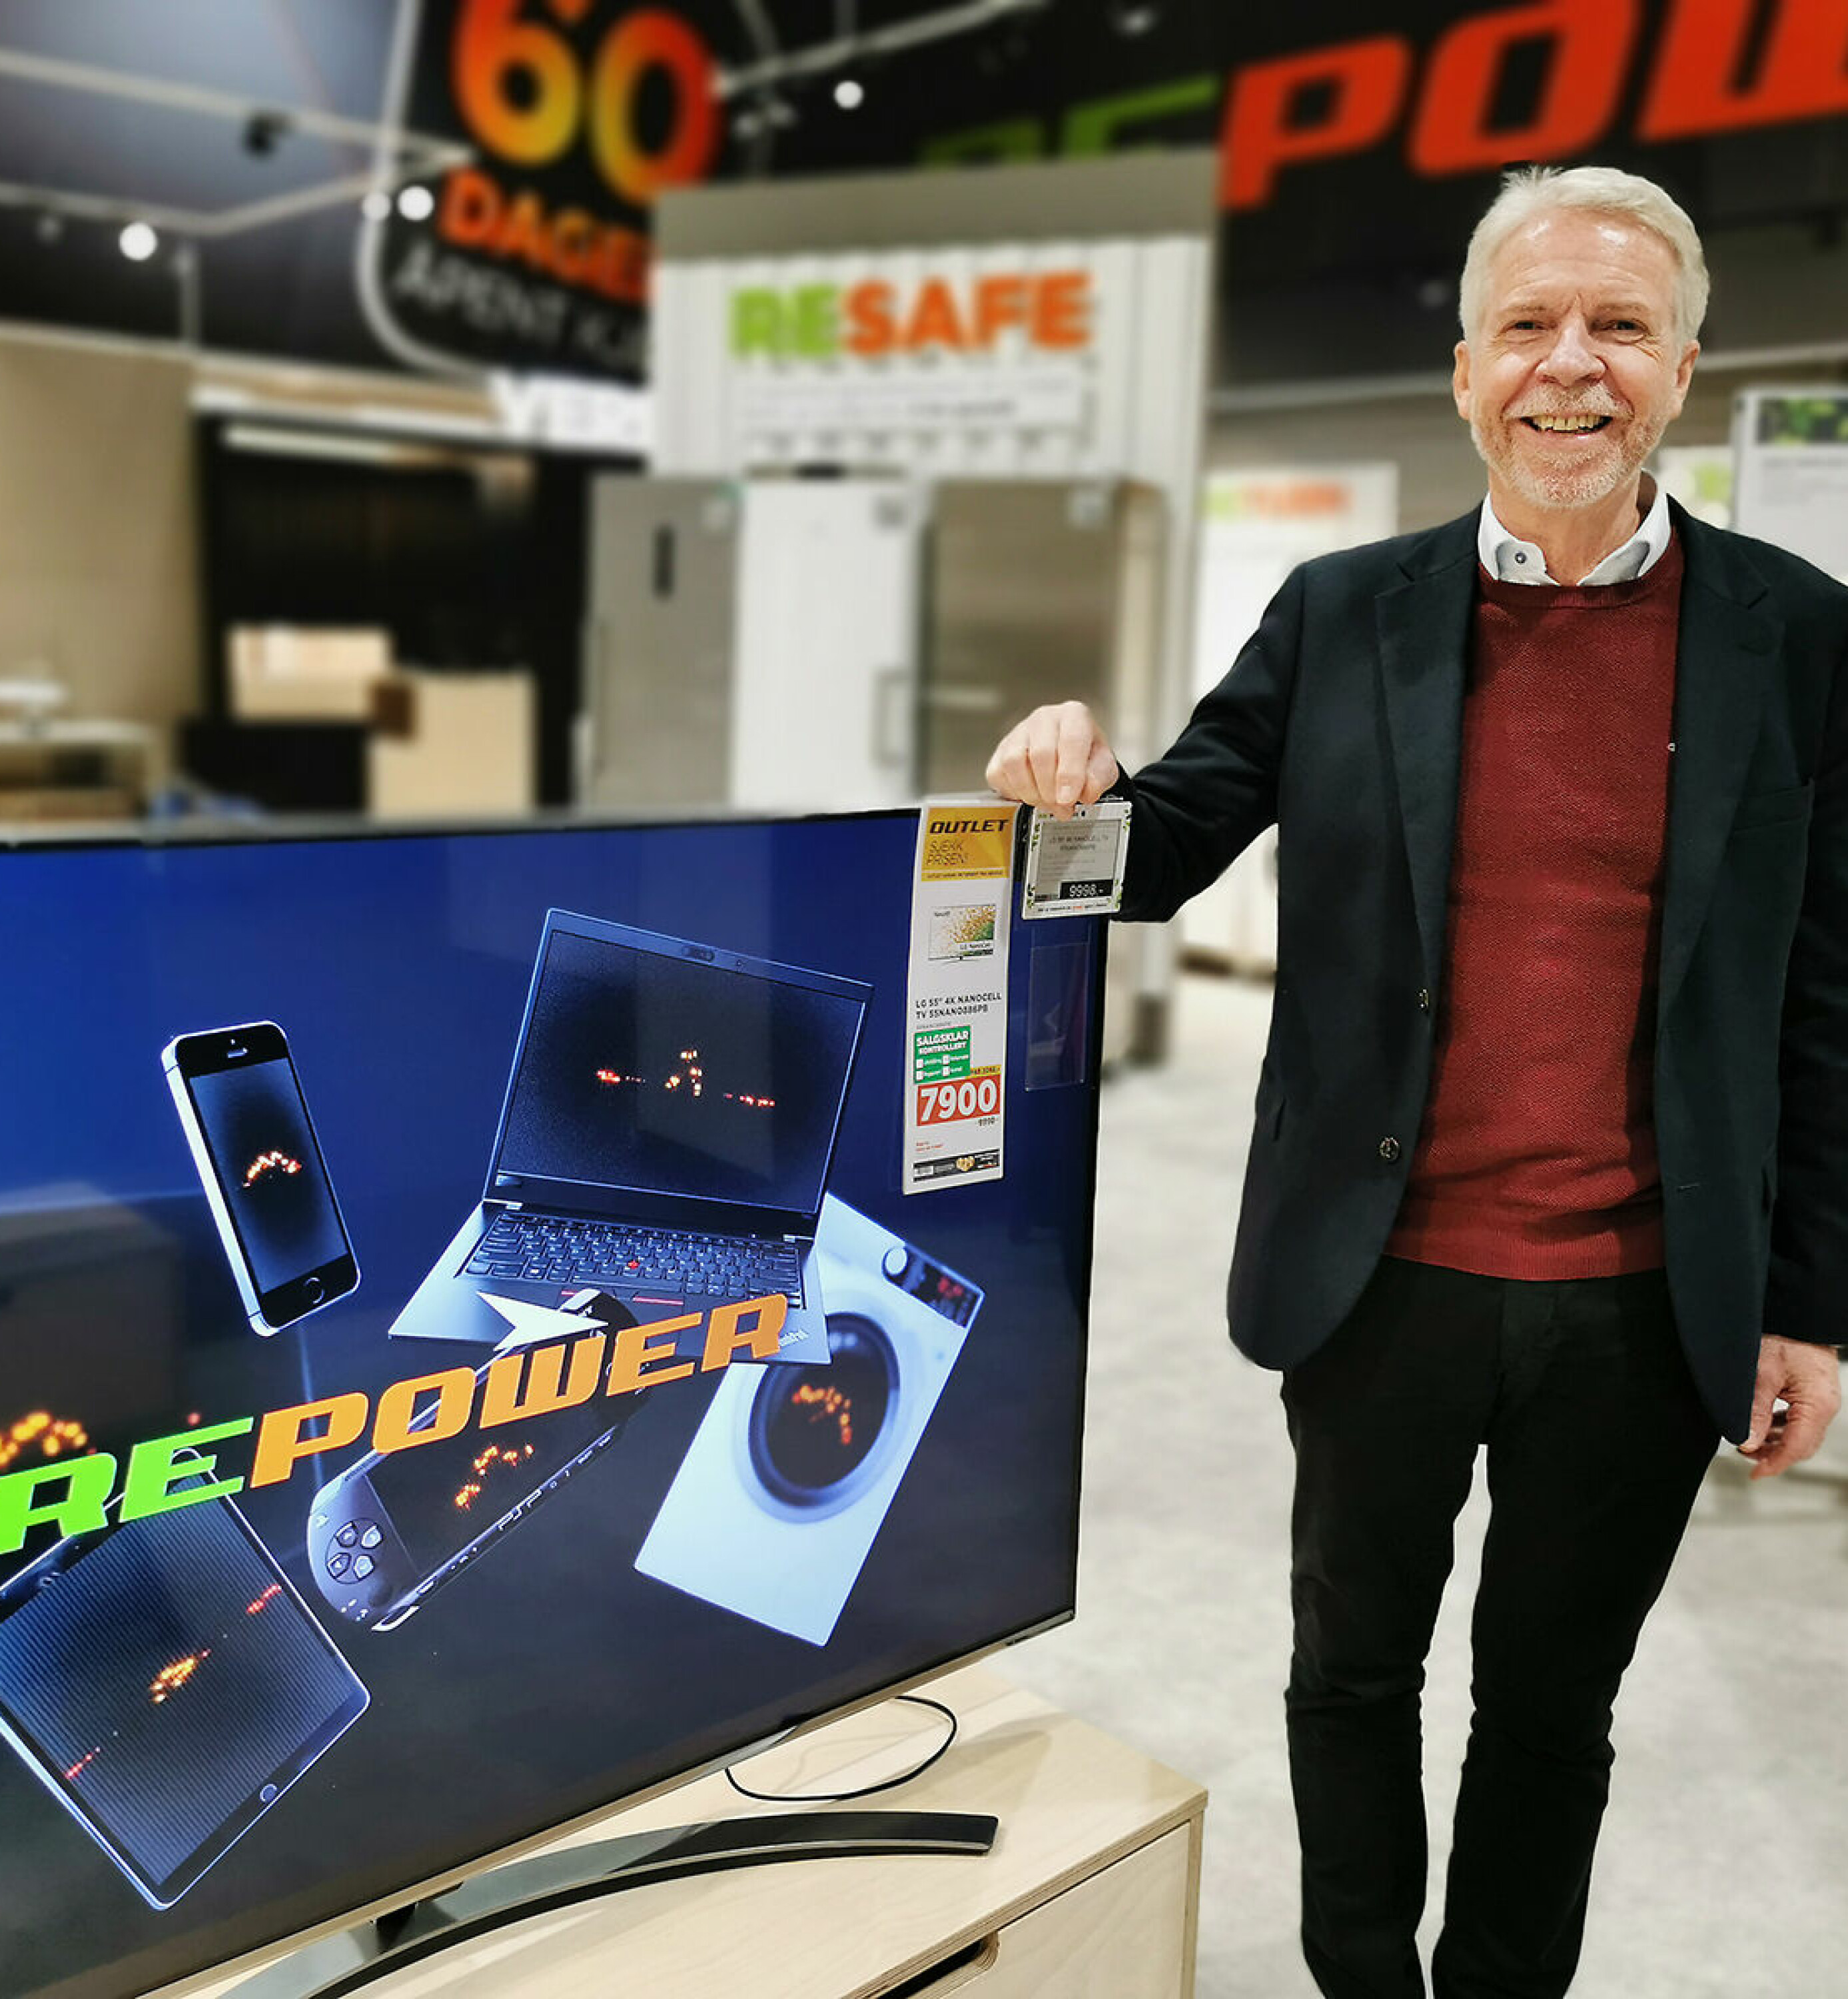 Daglig leder Pål Haugen i OmBrukt AS mener RePower viser at det er fornuftig at ombrukte produkter selges sammen med nye. Foto: Stian Sønsteng